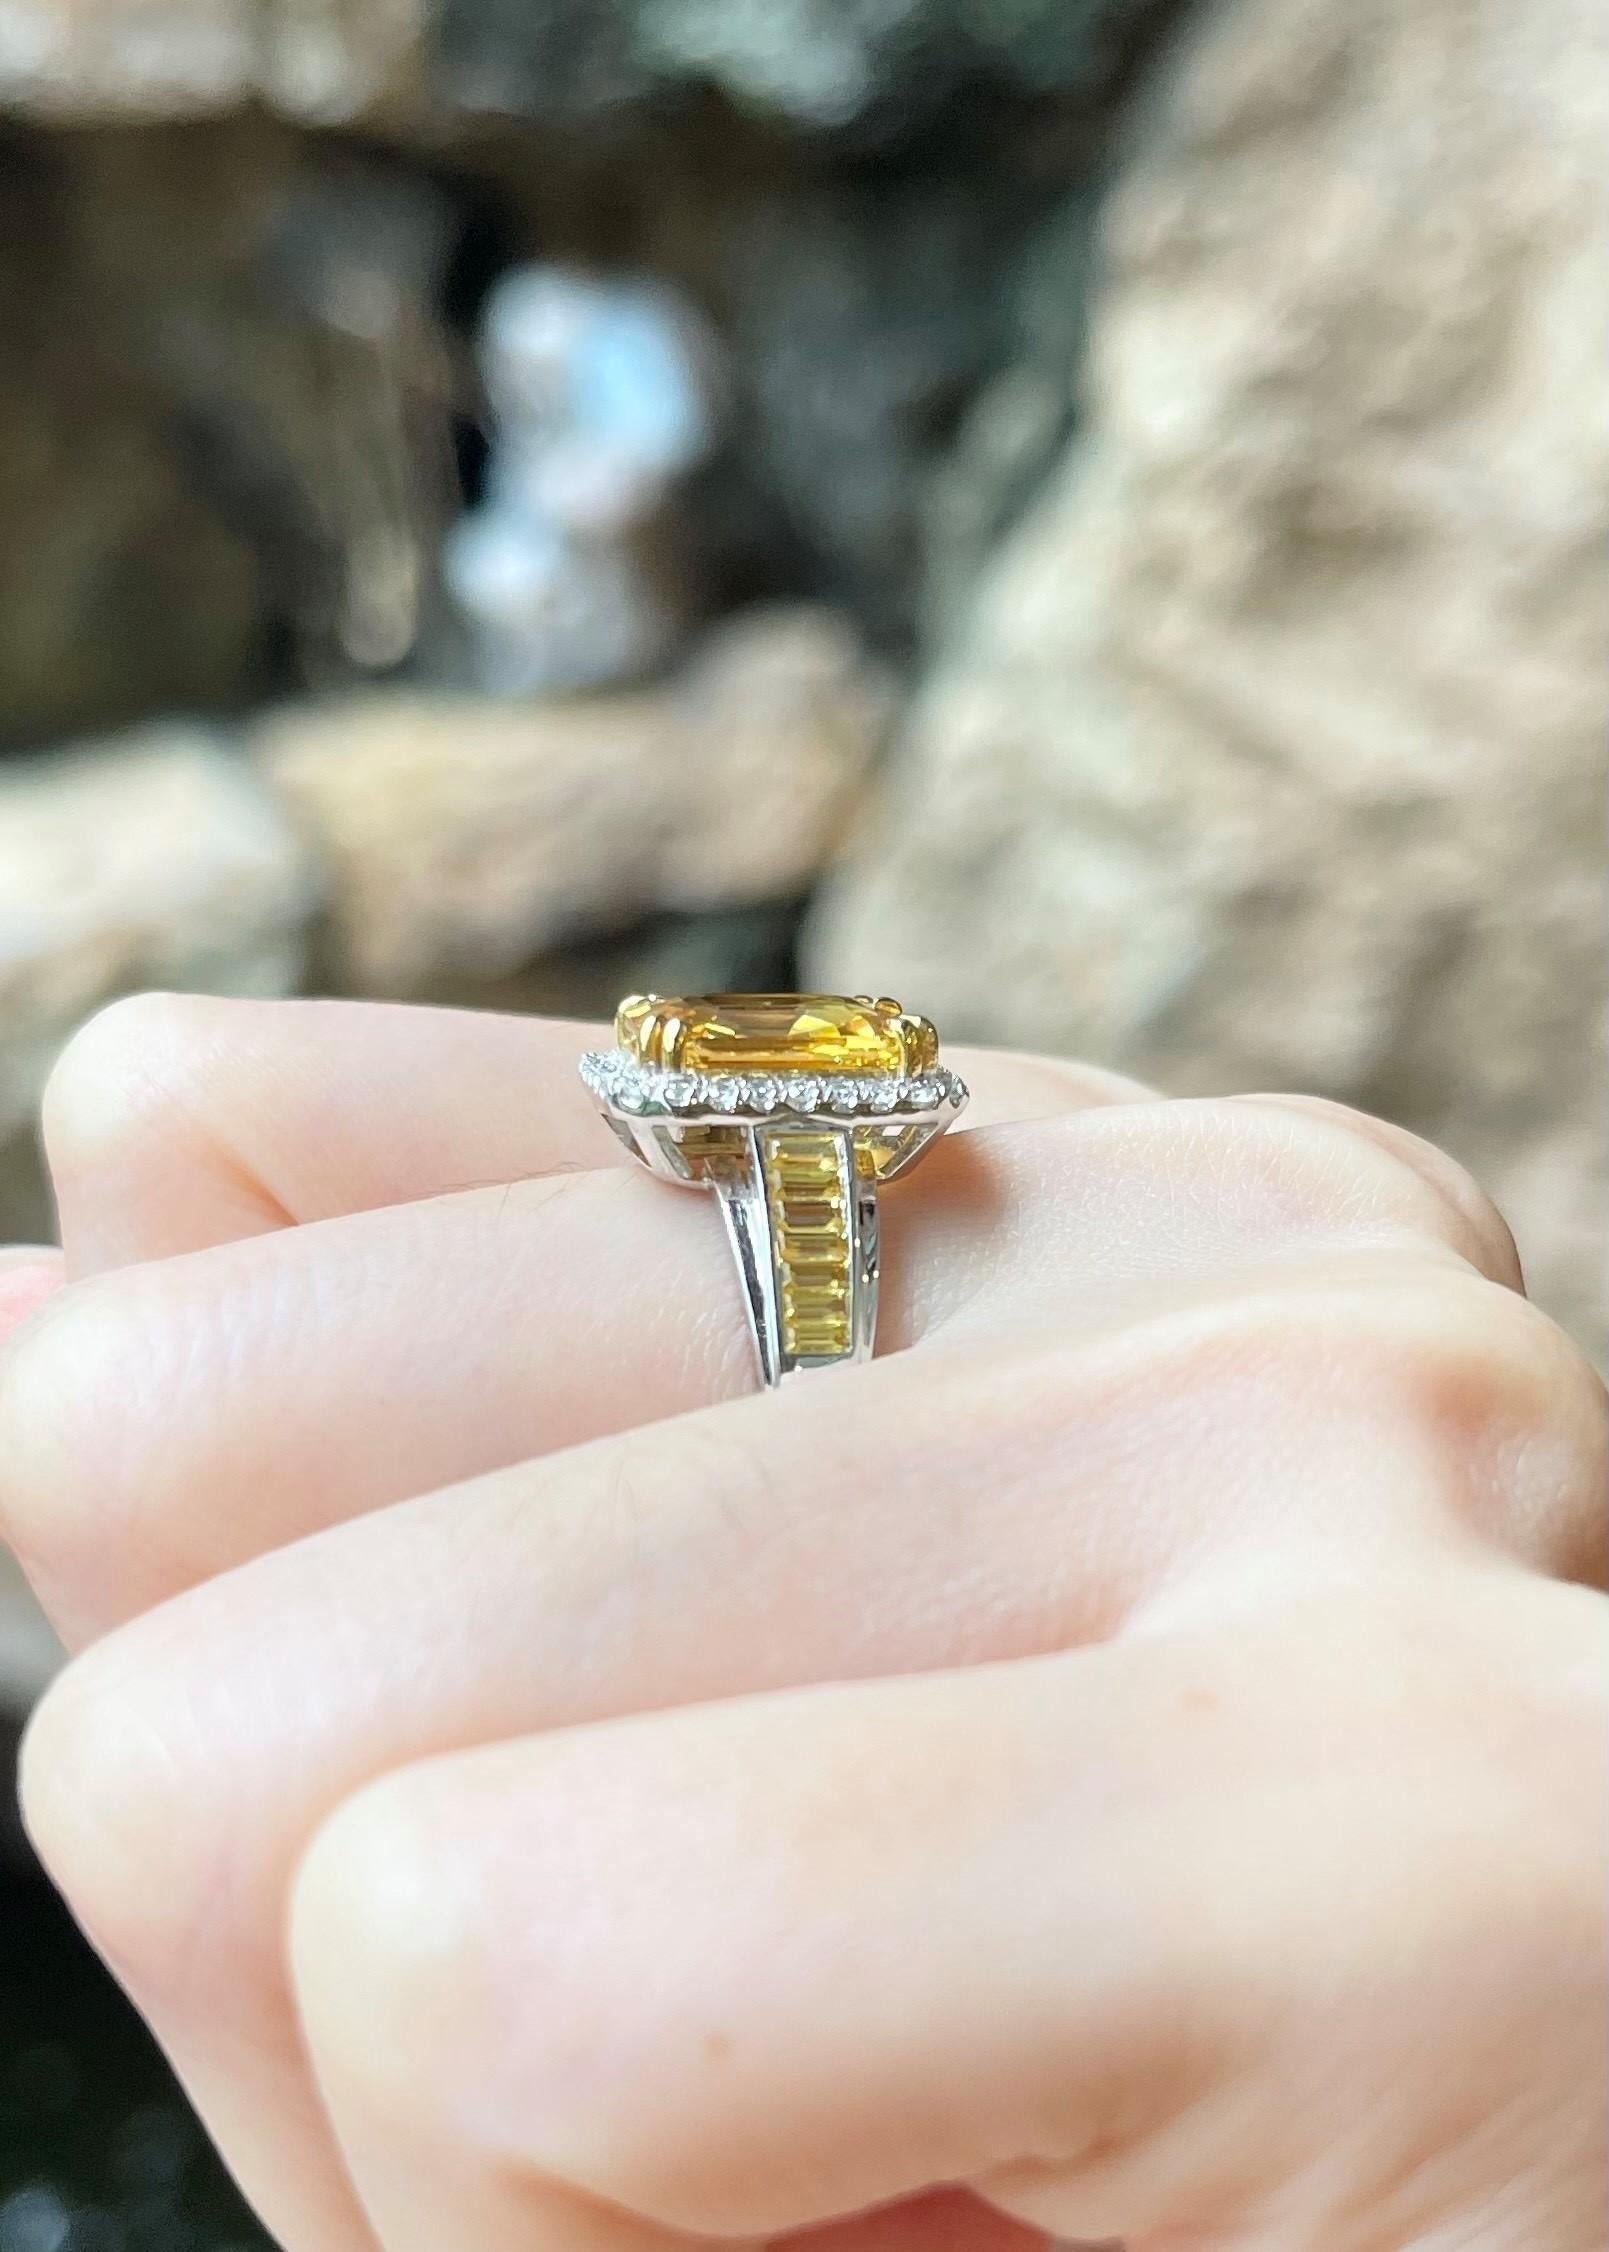 Saphir jaune 5,09 carats, saphir jaune 1,81 carats et diamant 0,29 carat Bague en or blanc 18 carats

Largeur :  1,2 cm 
Longueur : 1.5 cm
Taille de l'anneau : 54
Poids total : 7,72 grammes

